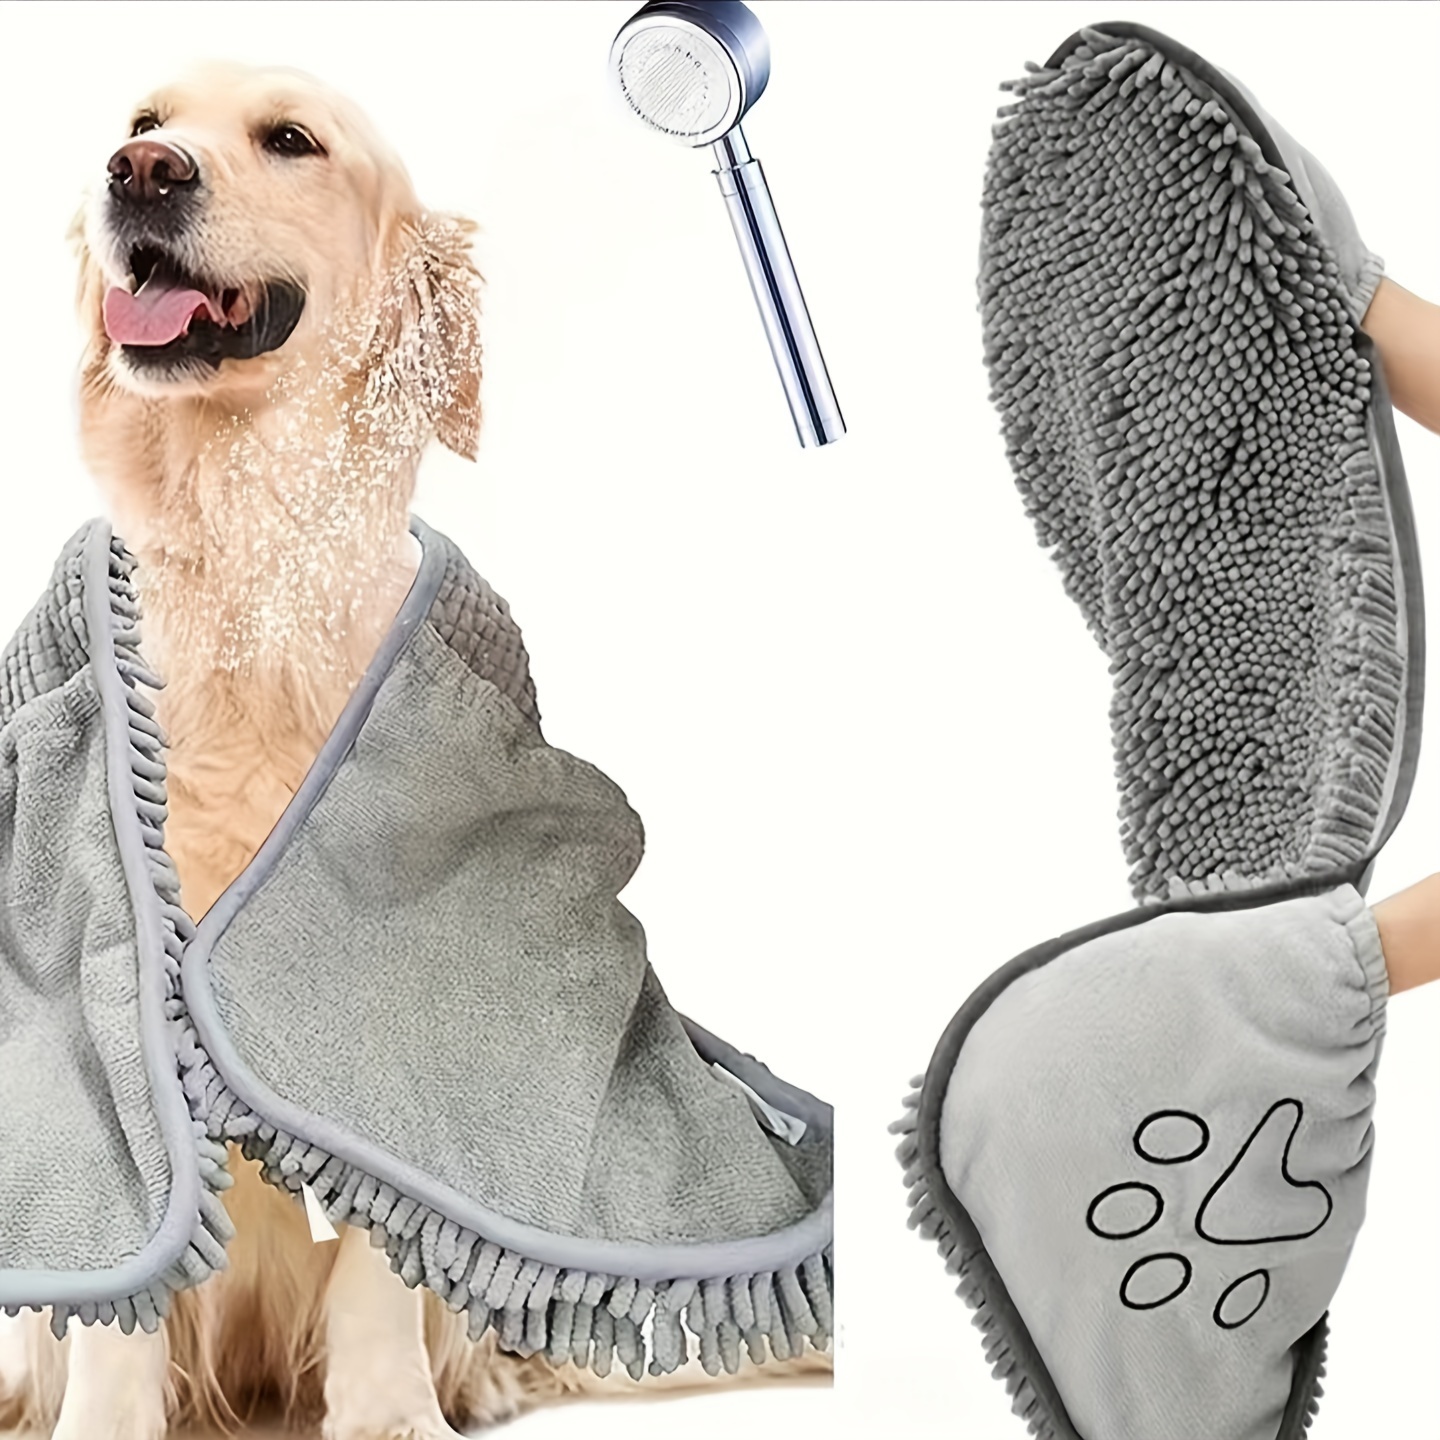  N/A - Toallas de secado rápido para perros y gatos, toallas de  fibra suave que absorben el agua, práctica toalla de limpieza para  mascotas, suministros para mascotas (color amarillo, tamaño: 23.6